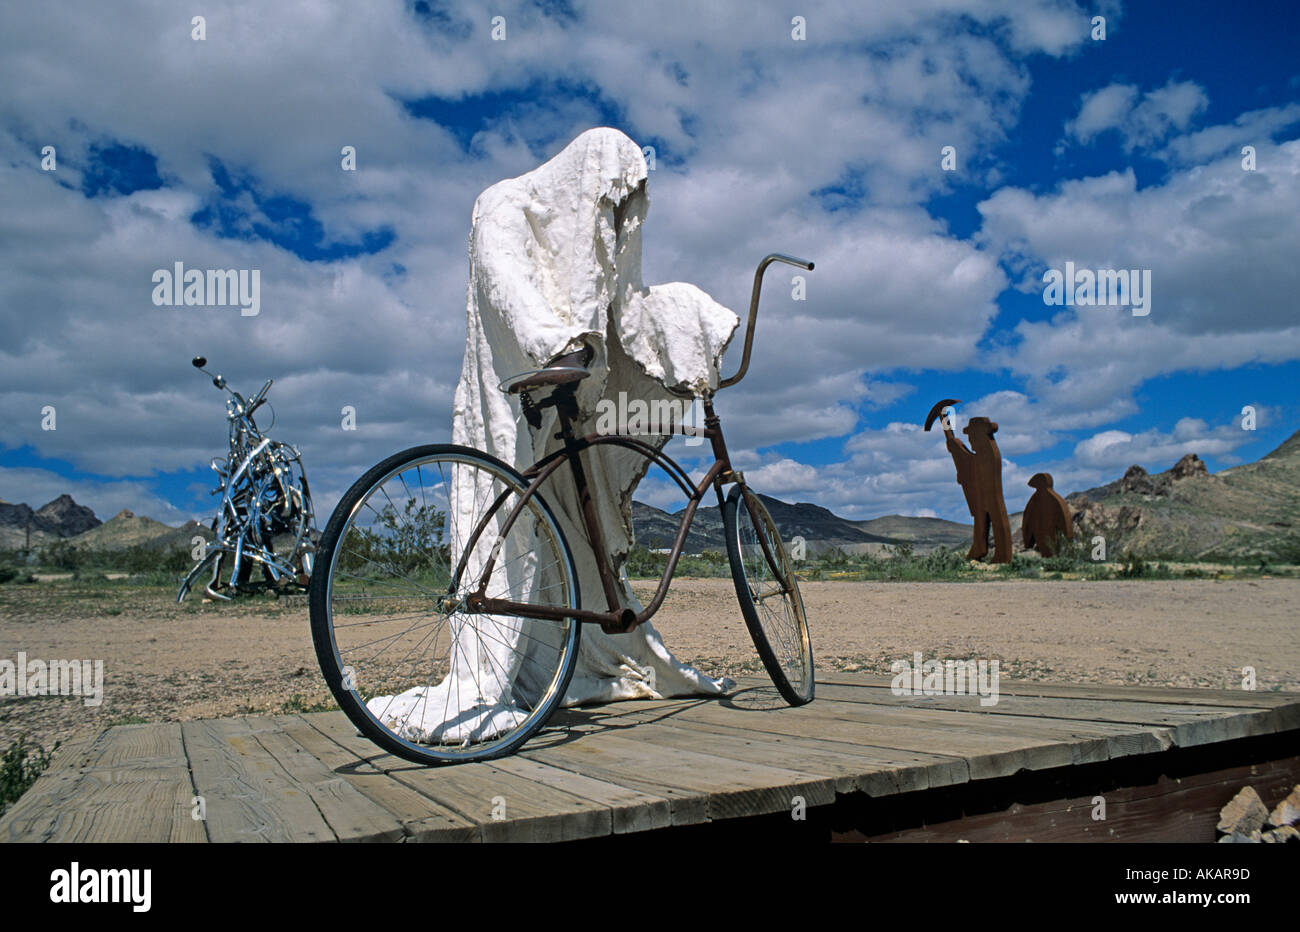 La scultura di un fantasma che sta per andare in bicicletta nei pressi di riolite, una città fantasma in Nevada USA Foto Stock